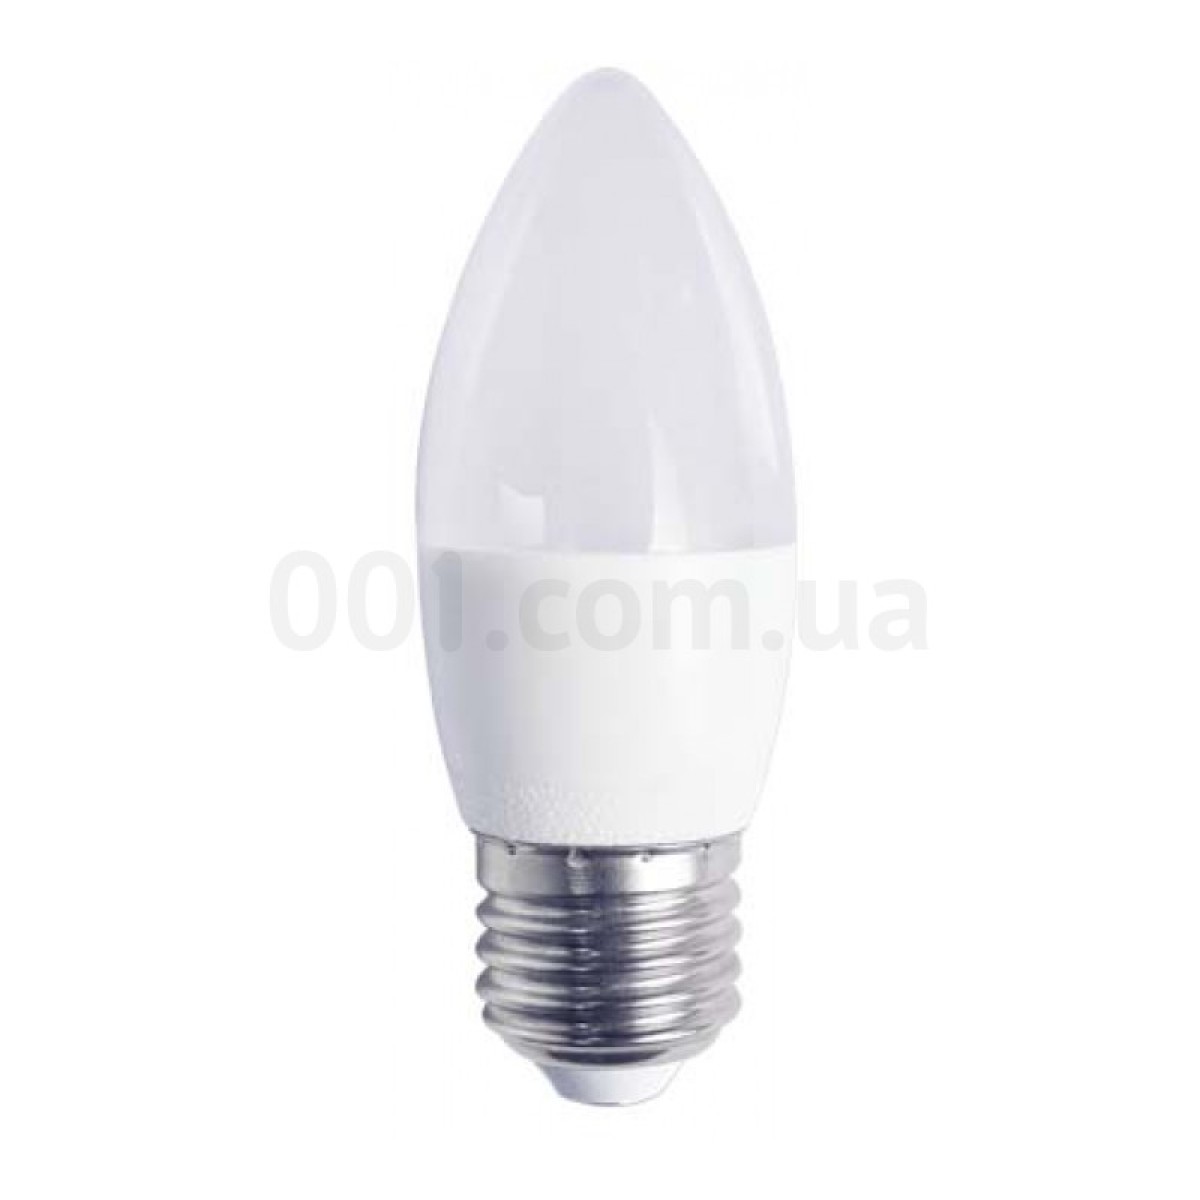 Светодиодная лампа LB-720 C37 (свеча) 4Вт 4000K E27, Feron 256_256.jpg